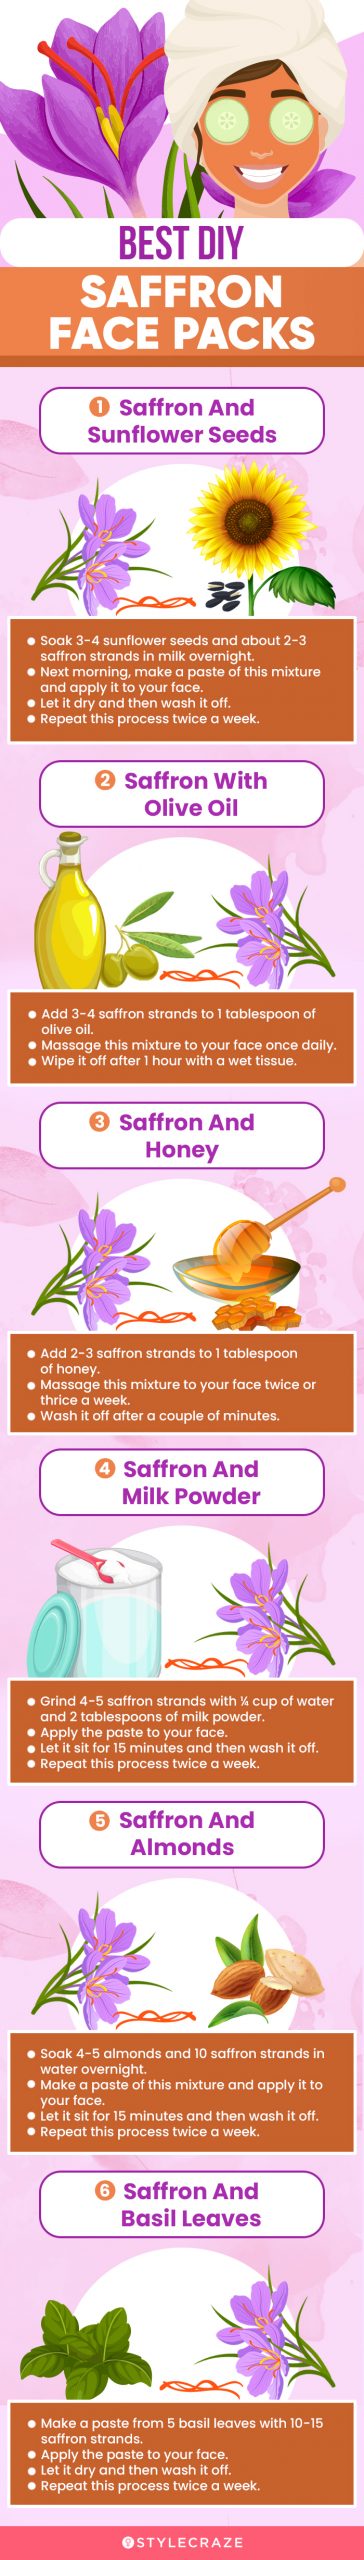 best diy saffron face packs (infographic)